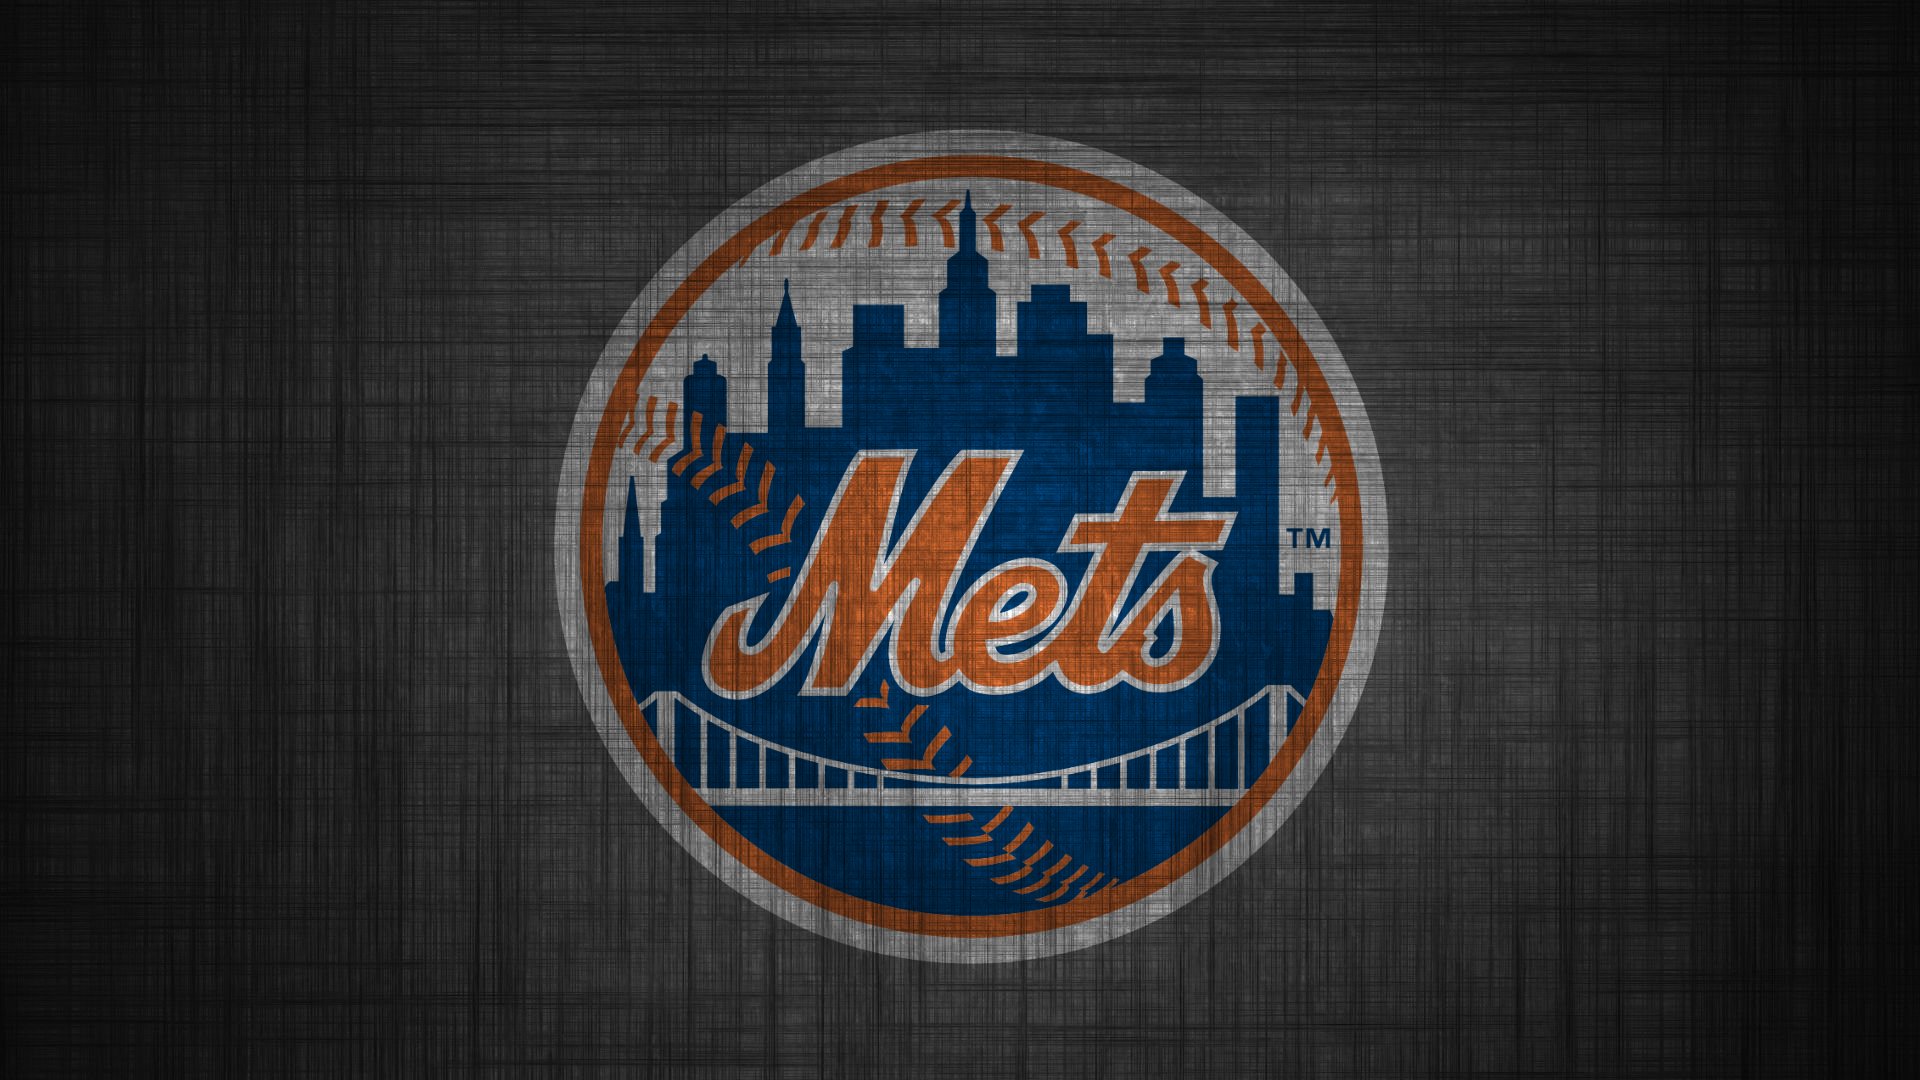 New York Mets Wallpaper 1   1920 X 1080 stmednet